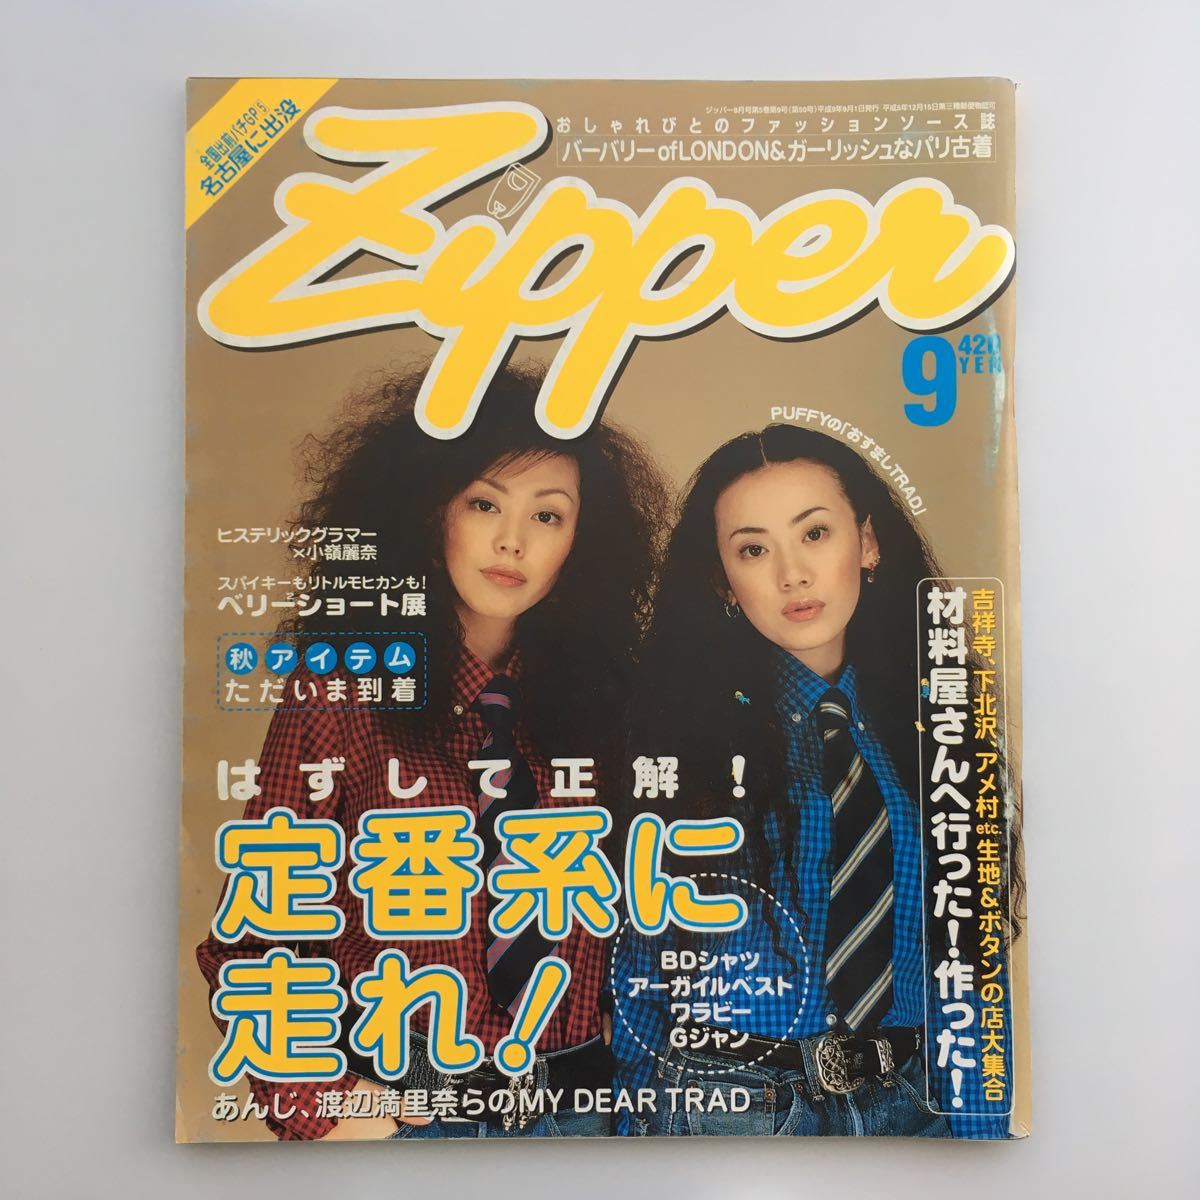 【希少】Zipper ジッパー 1997.9月号 PUFFY クロエ・セヴィニー